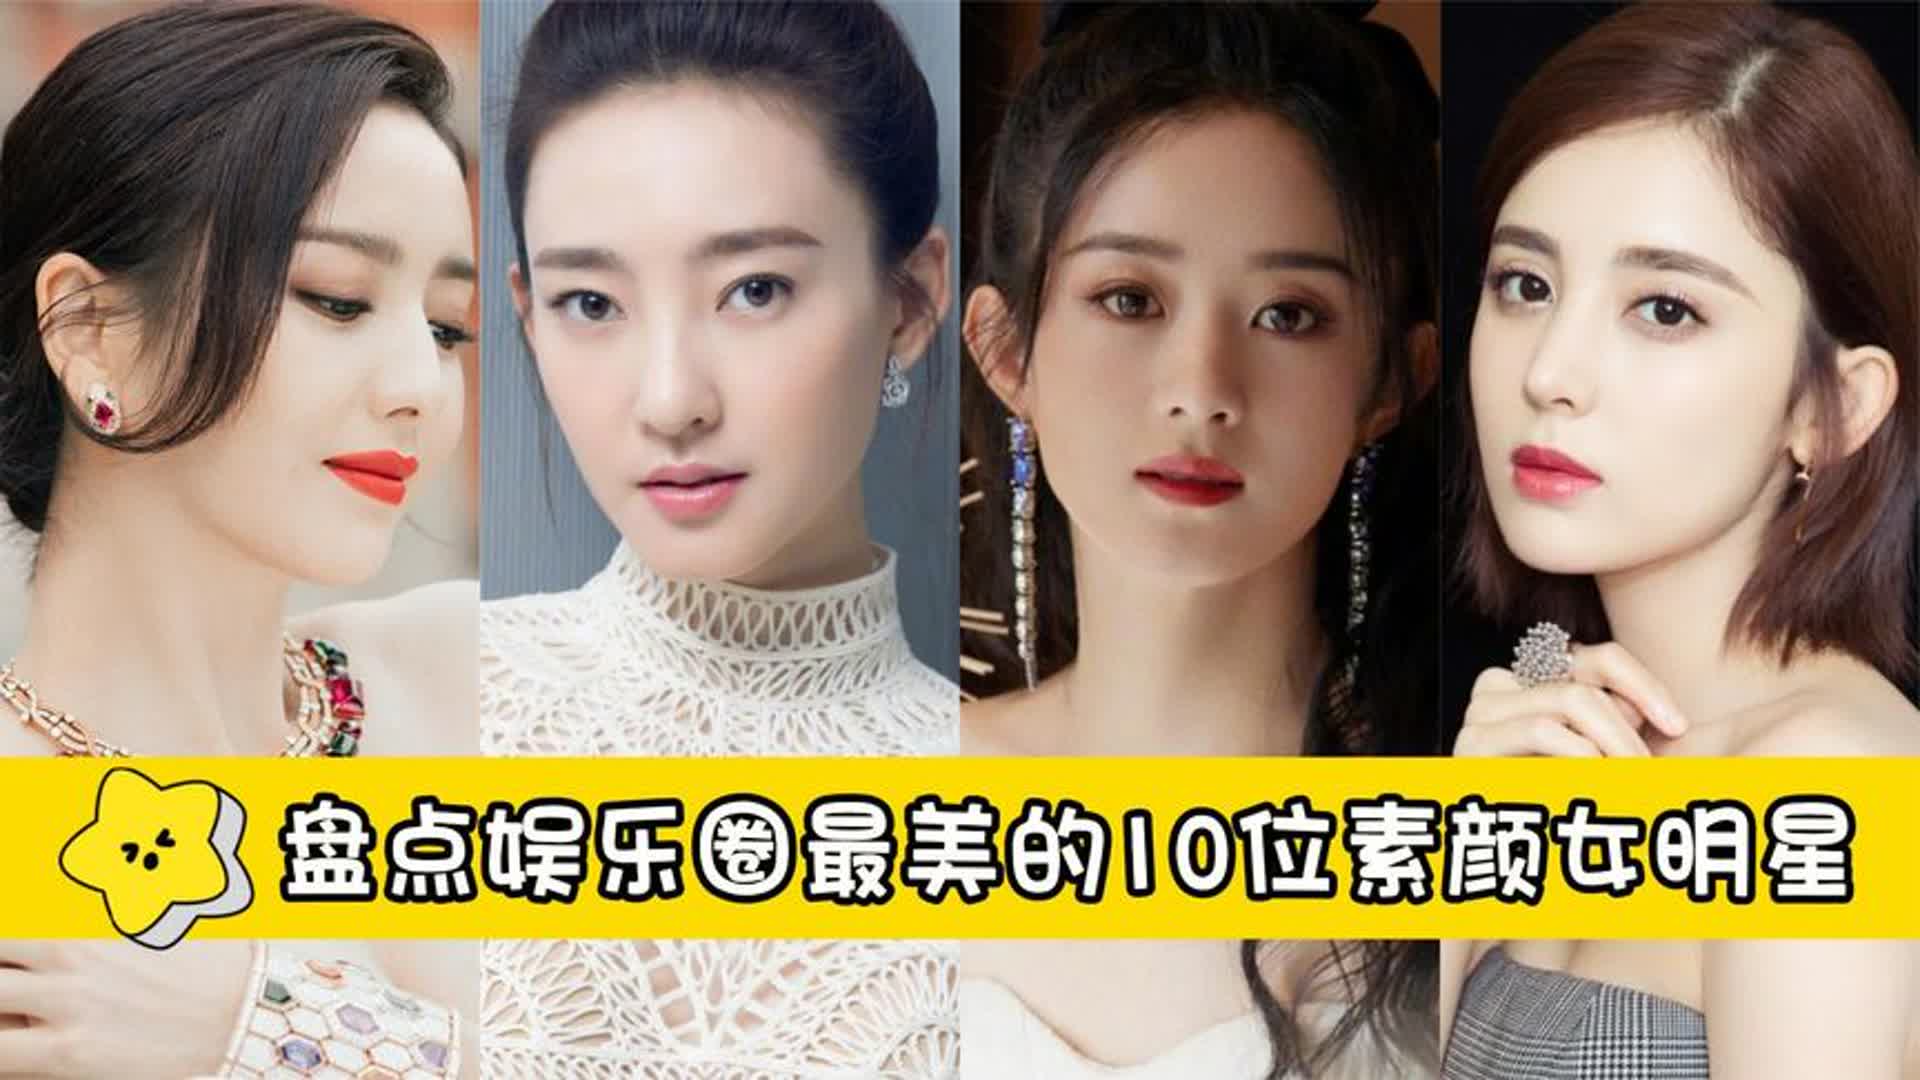 10位娱乐圈最美素颜女明星,谭松韵勉强上榜,陈都灵仅排第8